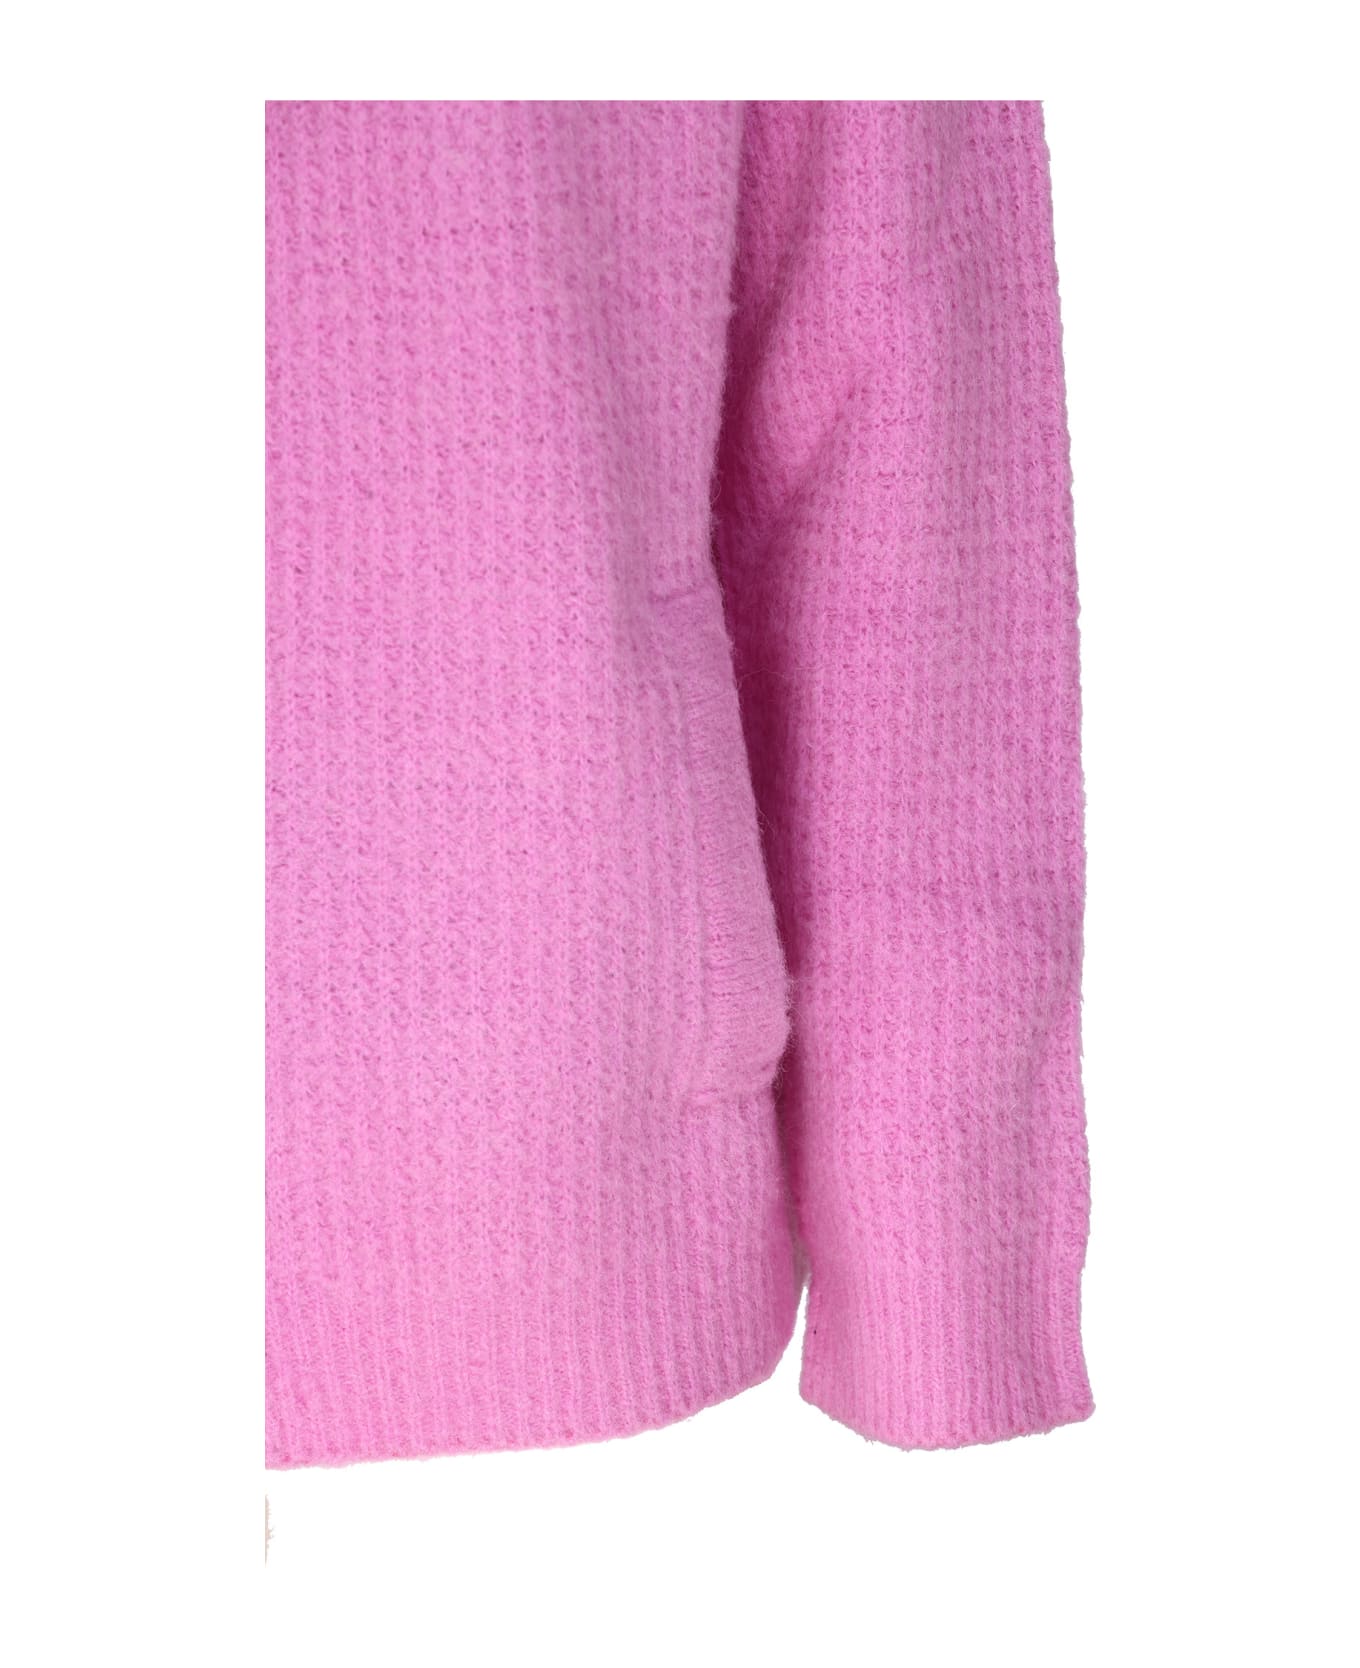 Giorgio Armani Hooded Sweater Giorgio Armani - PINK ジャケット